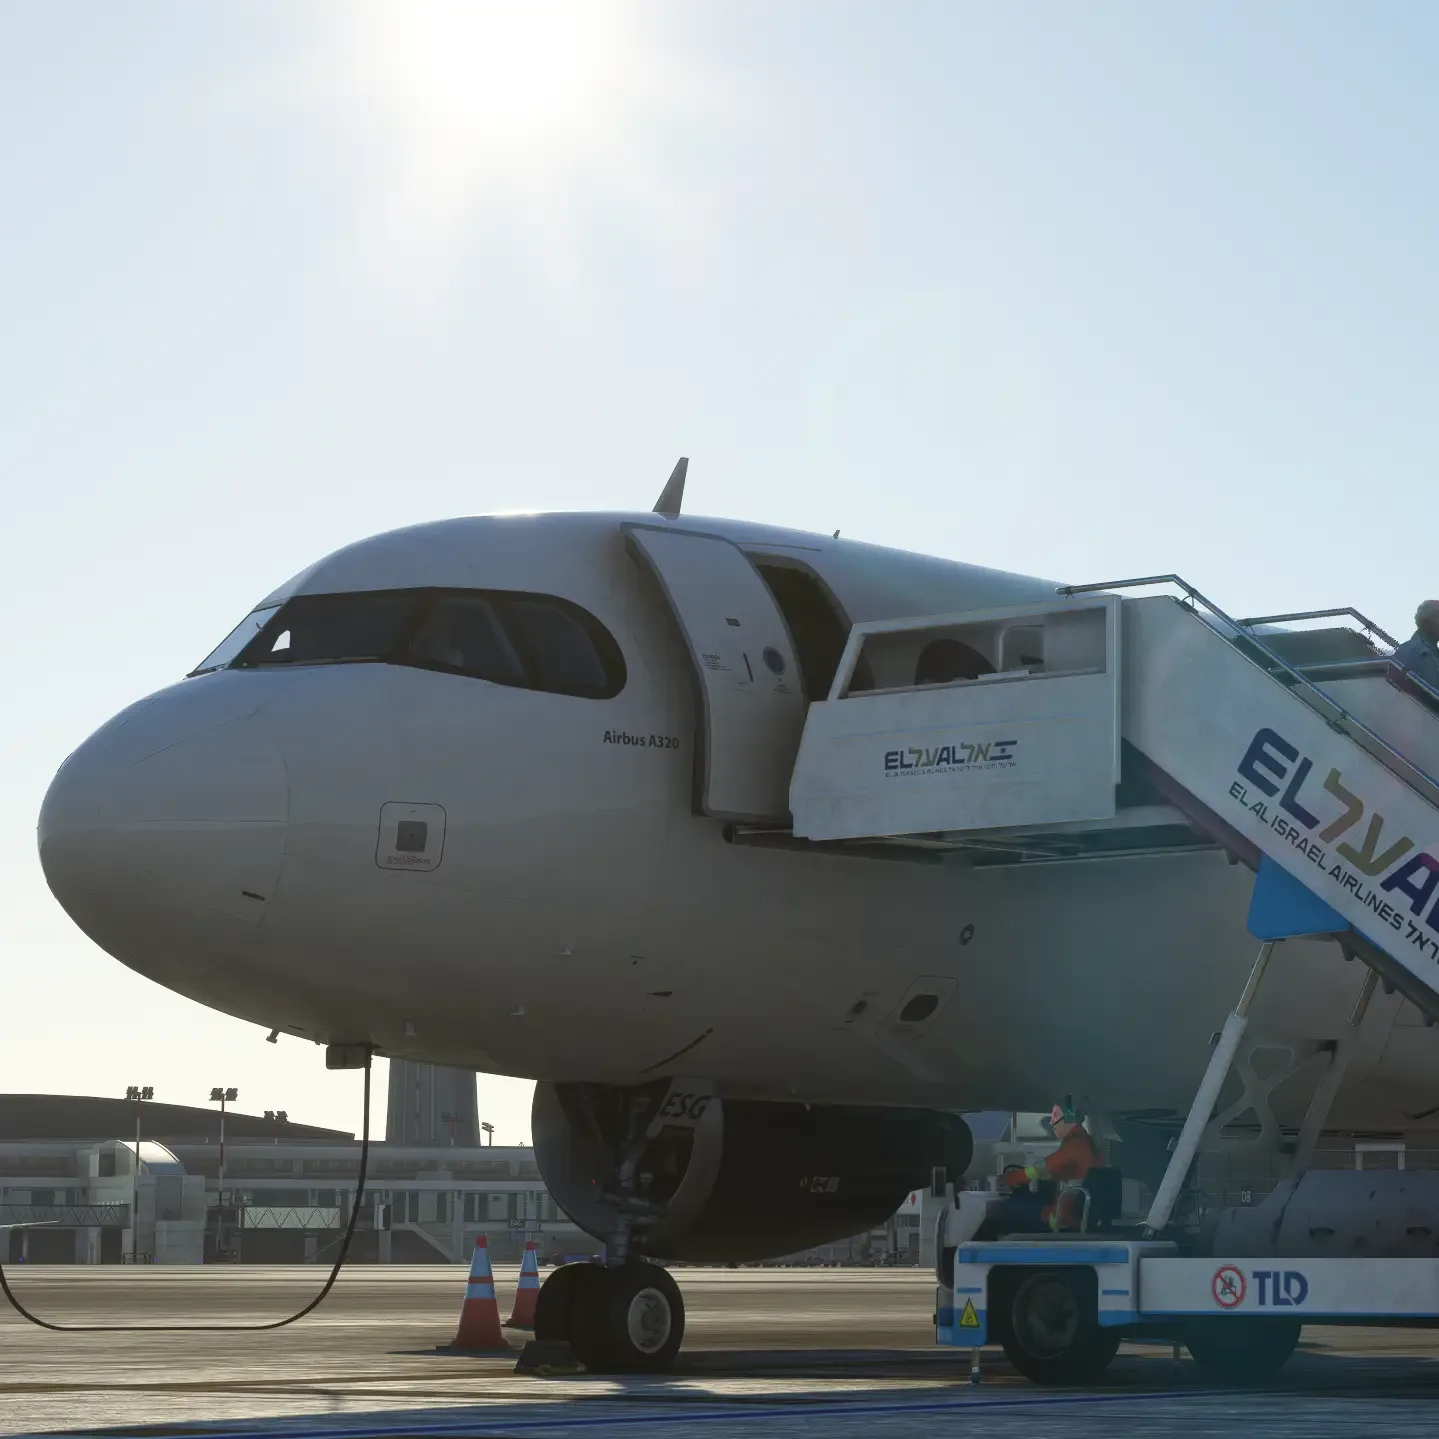 euroSKIES virtual airline airbus debording operation in israel